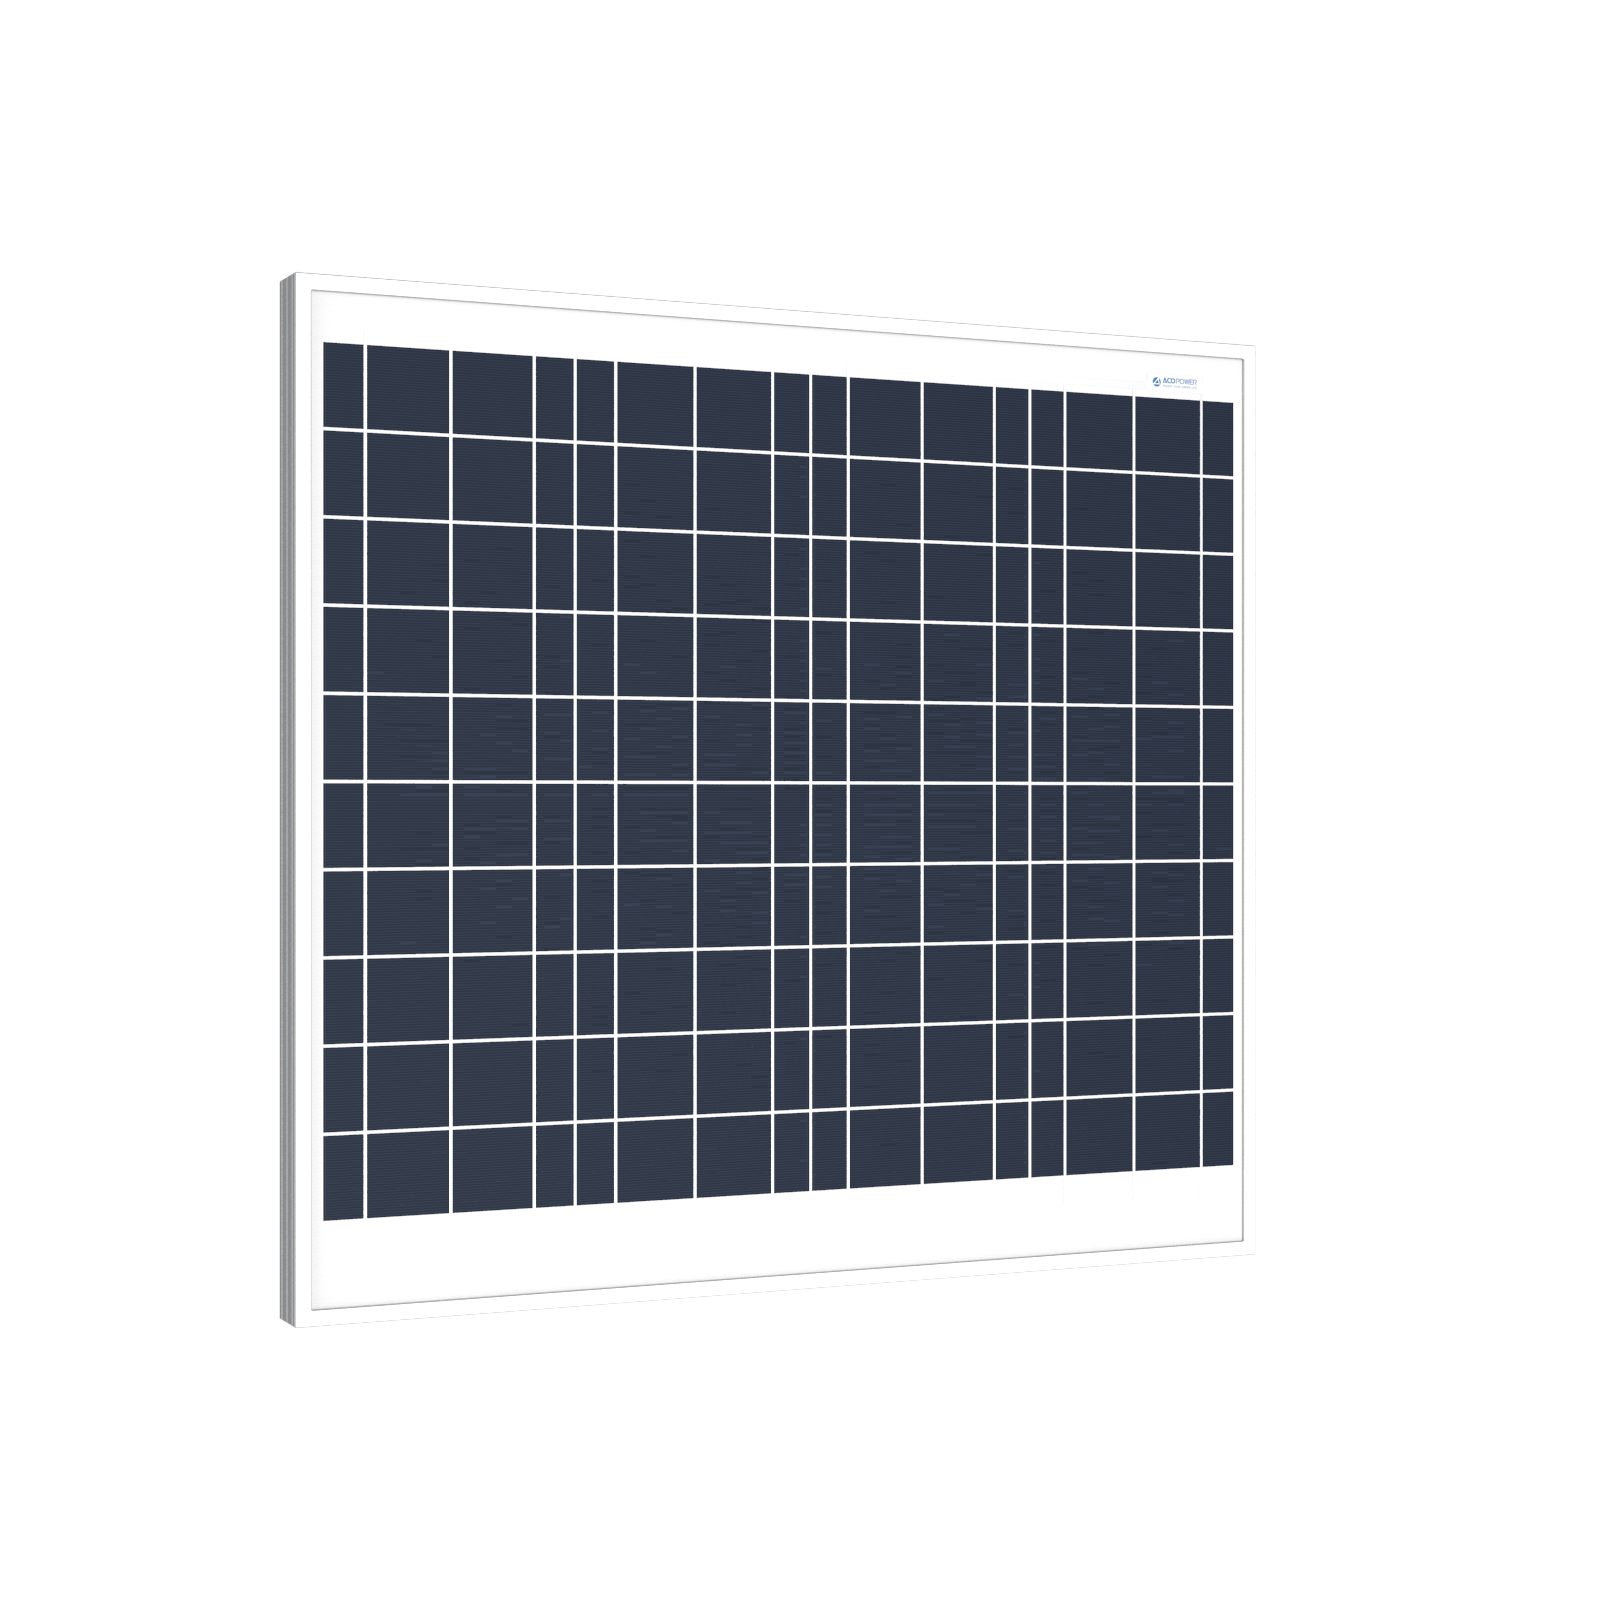 ACOPOWER 60 Watts Polycrystalline Solar Panel, 12V